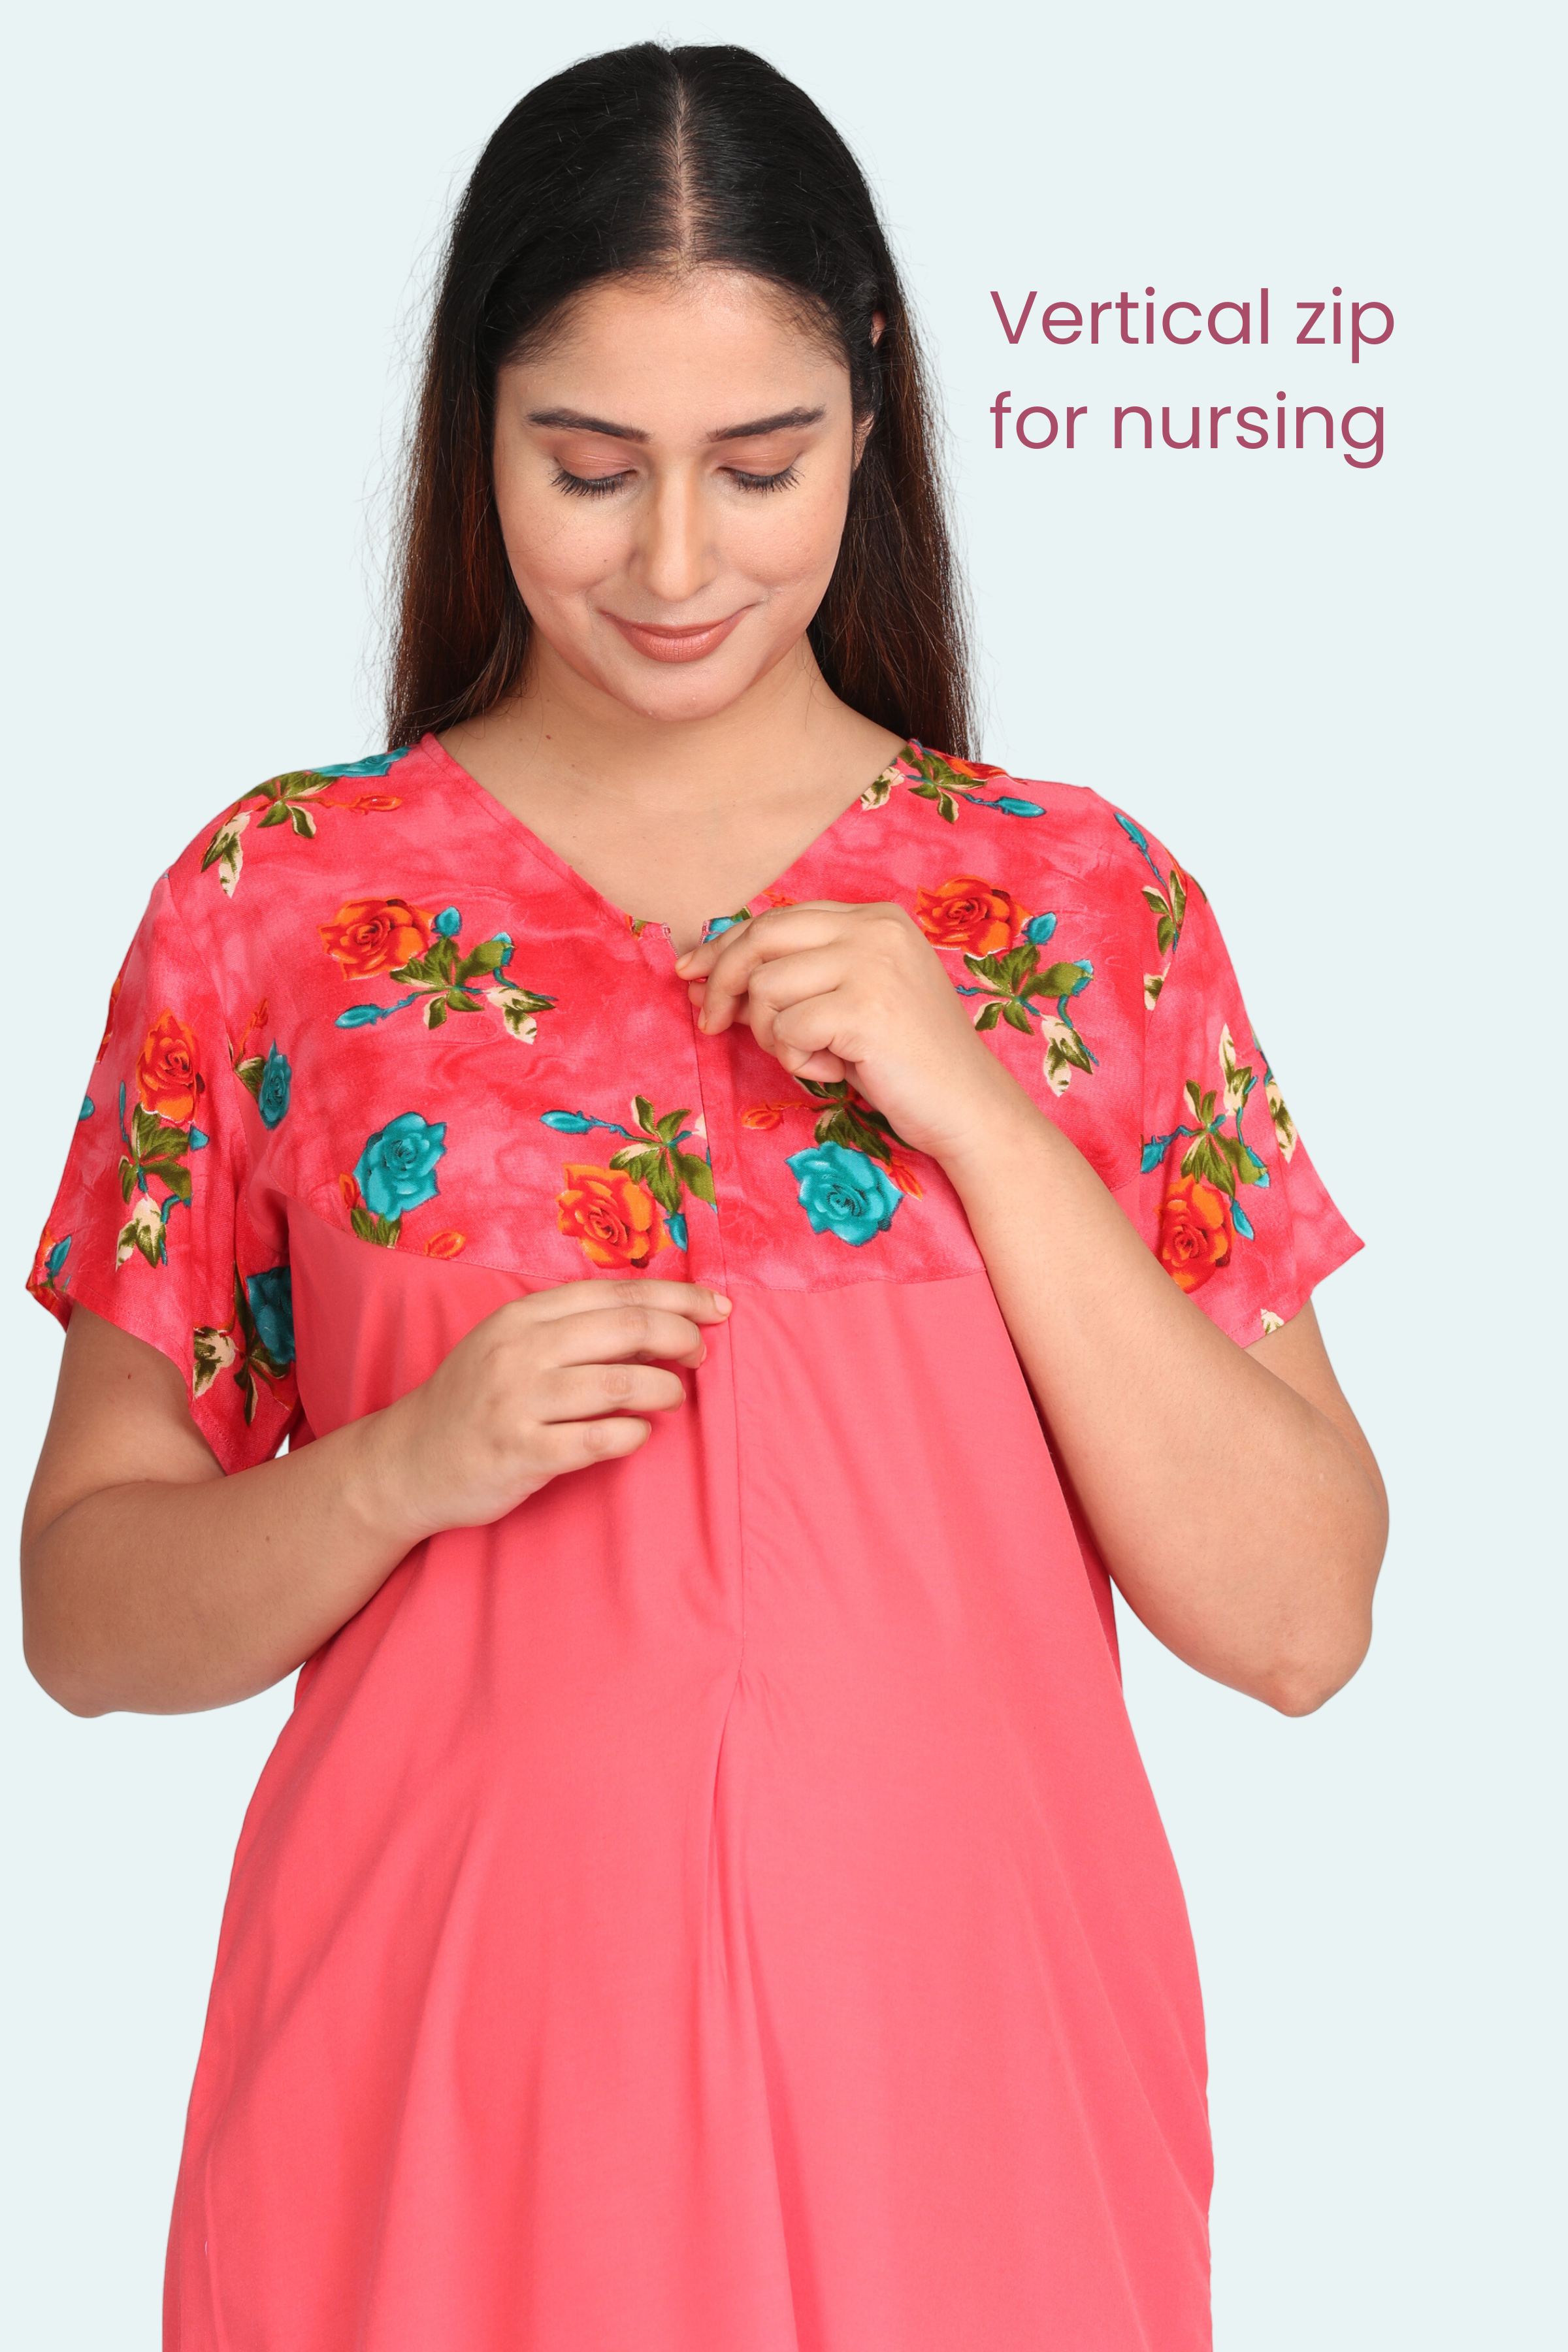 Premium & Designer Nursing Clothes | Soon Maternity